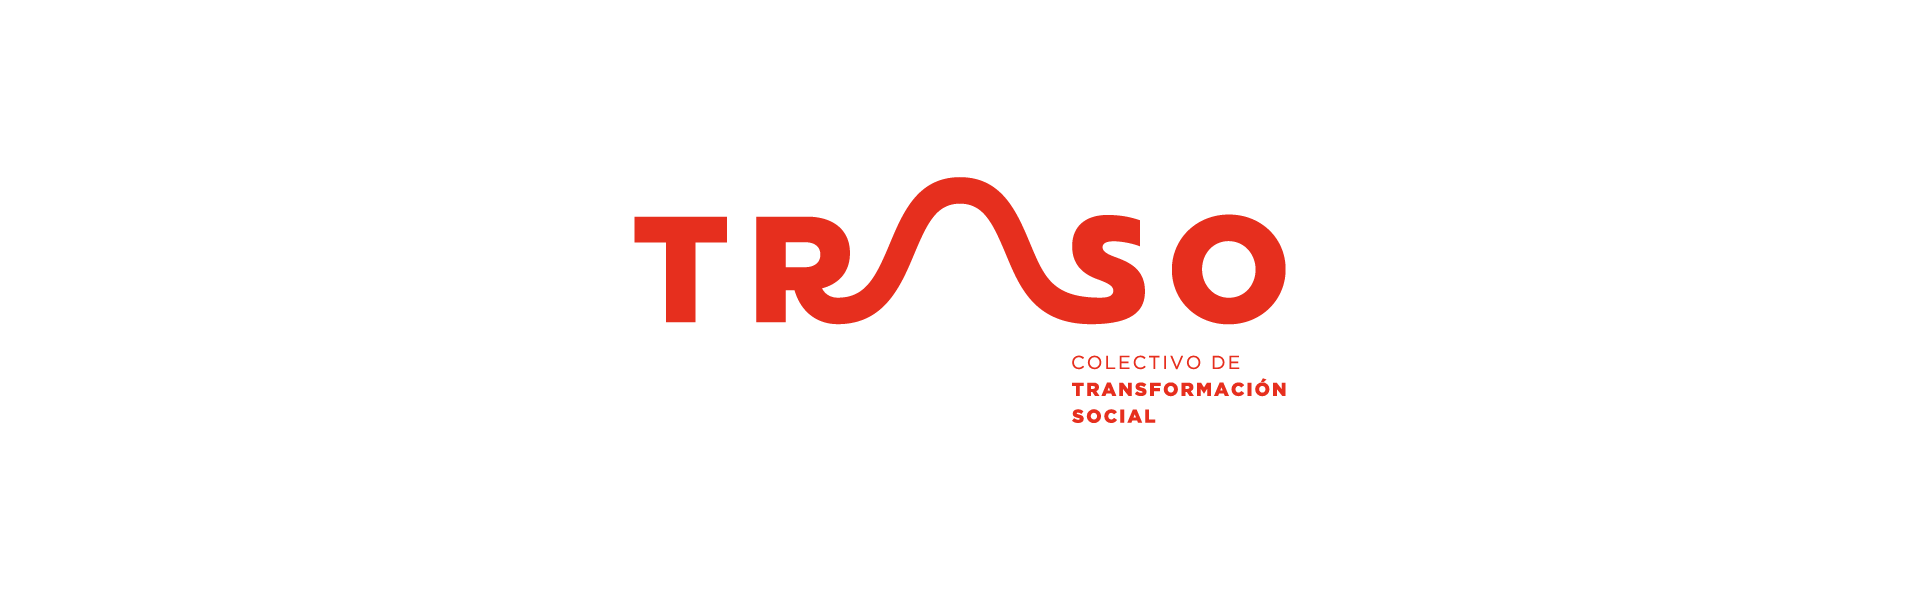 Logo para el colectivo de transformación social Traso